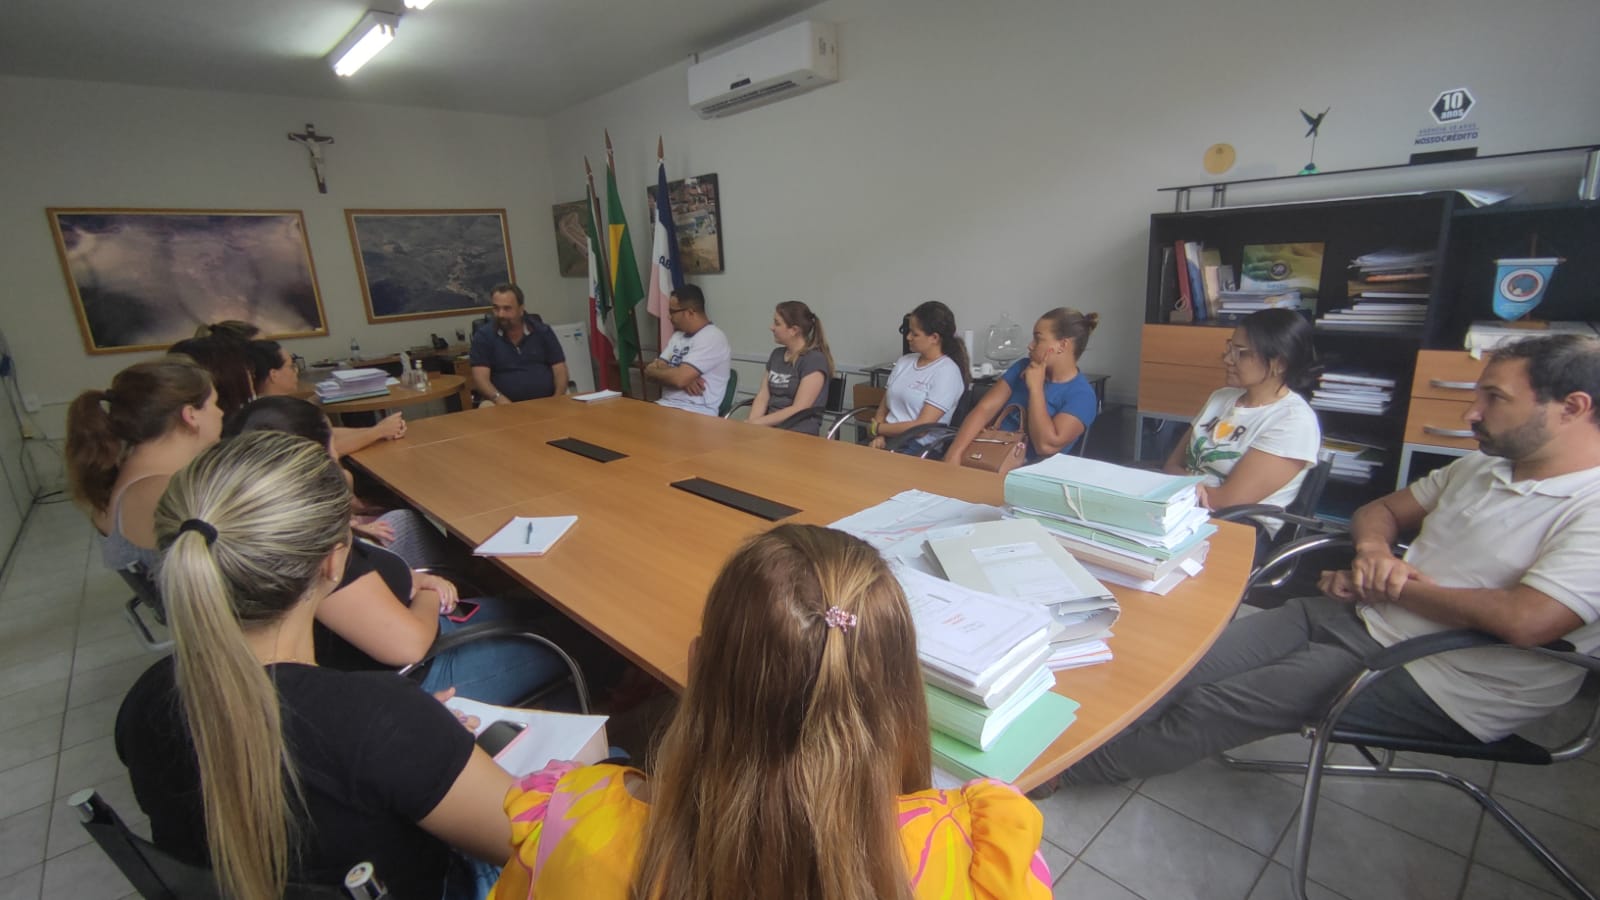 Prefeito convoca reunião para discutir ações que aumentem a segurança nas escolas do município.